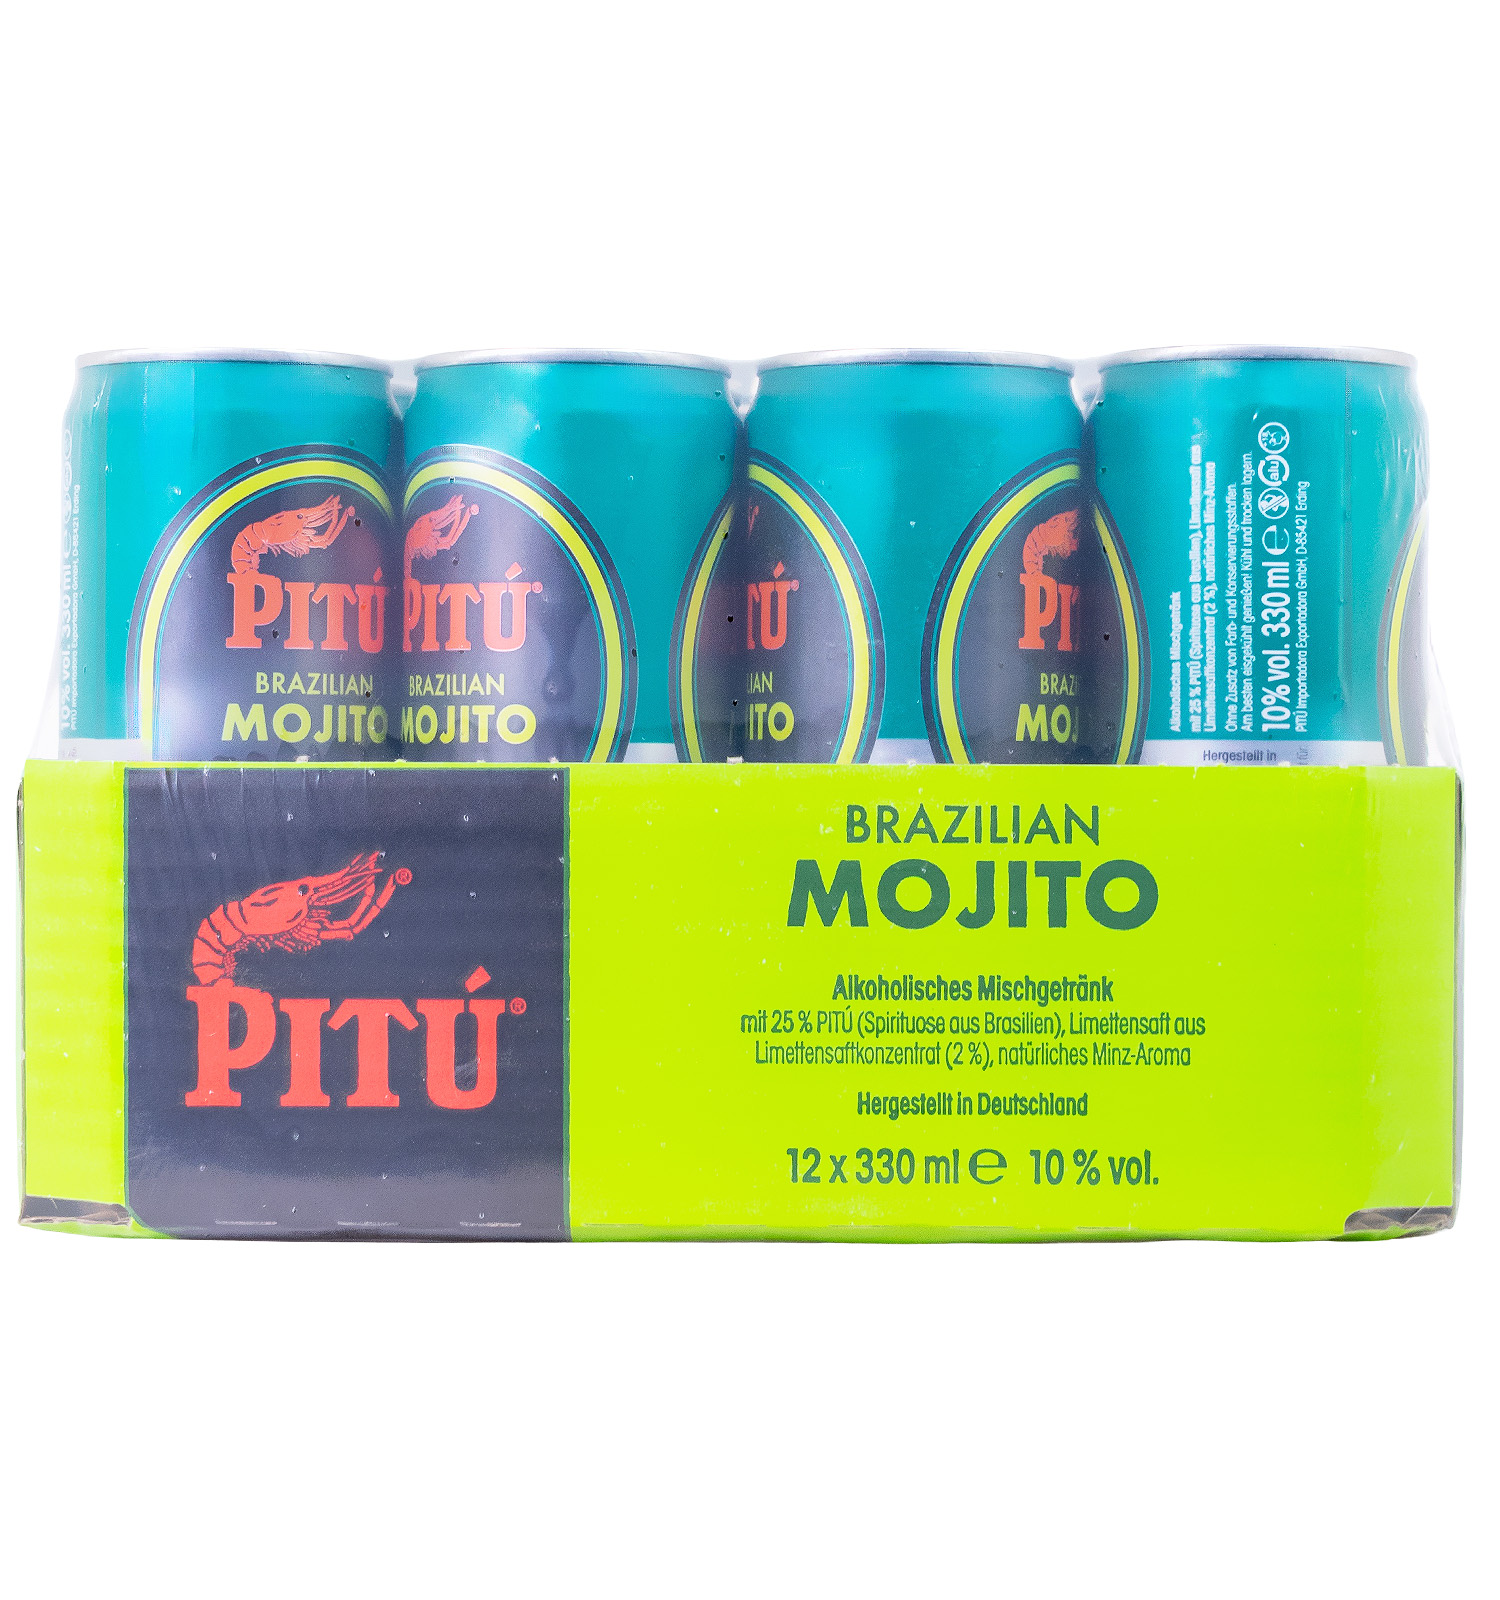 Paket [12 x 0,33L] Pitu Brazilian Mojito Dose - 3,96L 10% vol